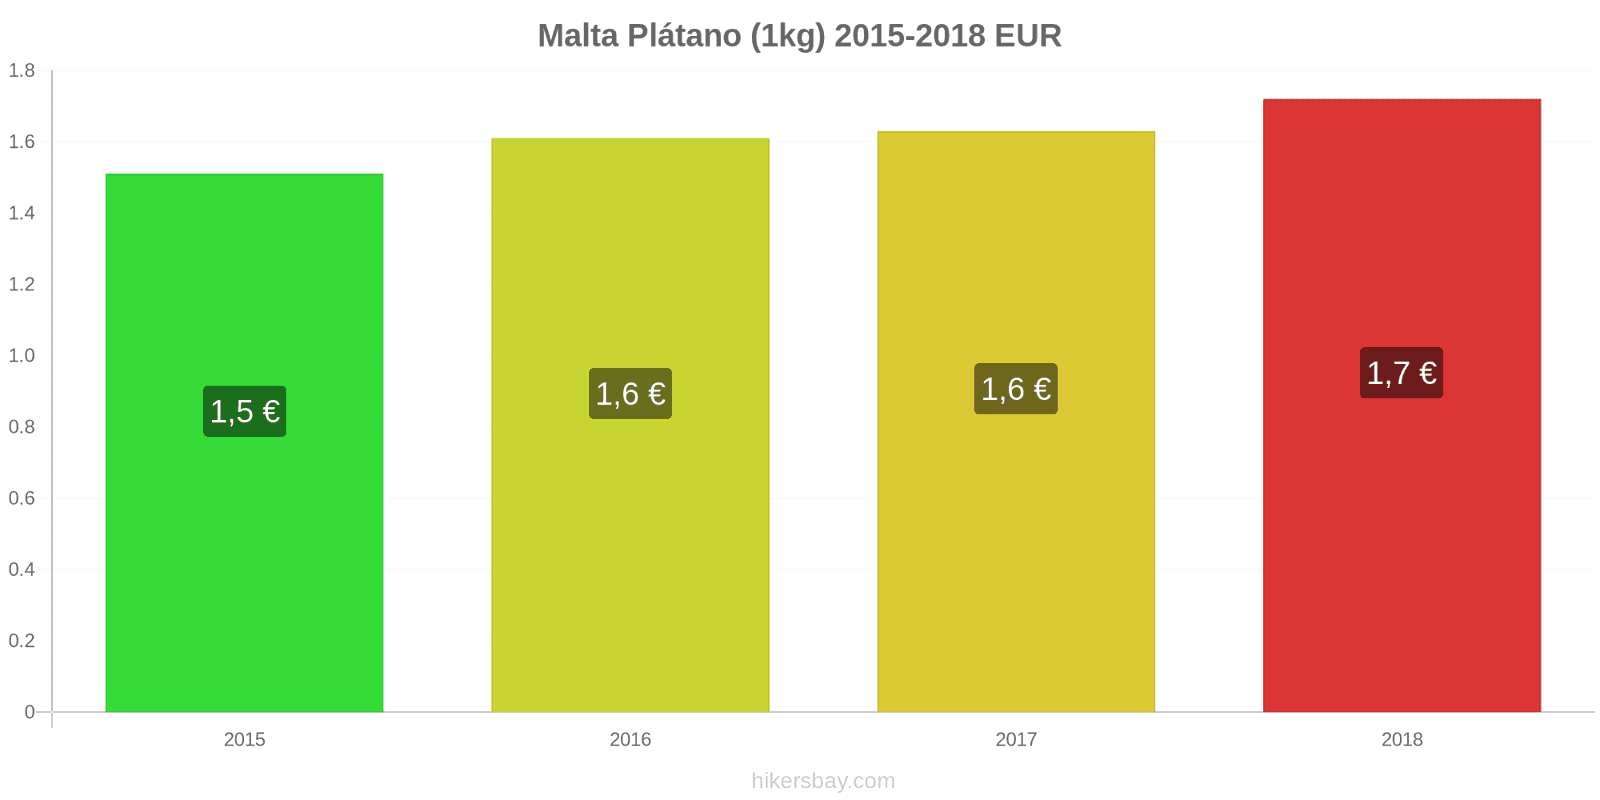 Malta cambios de precios Plátanos (1kg) hikersbay.com